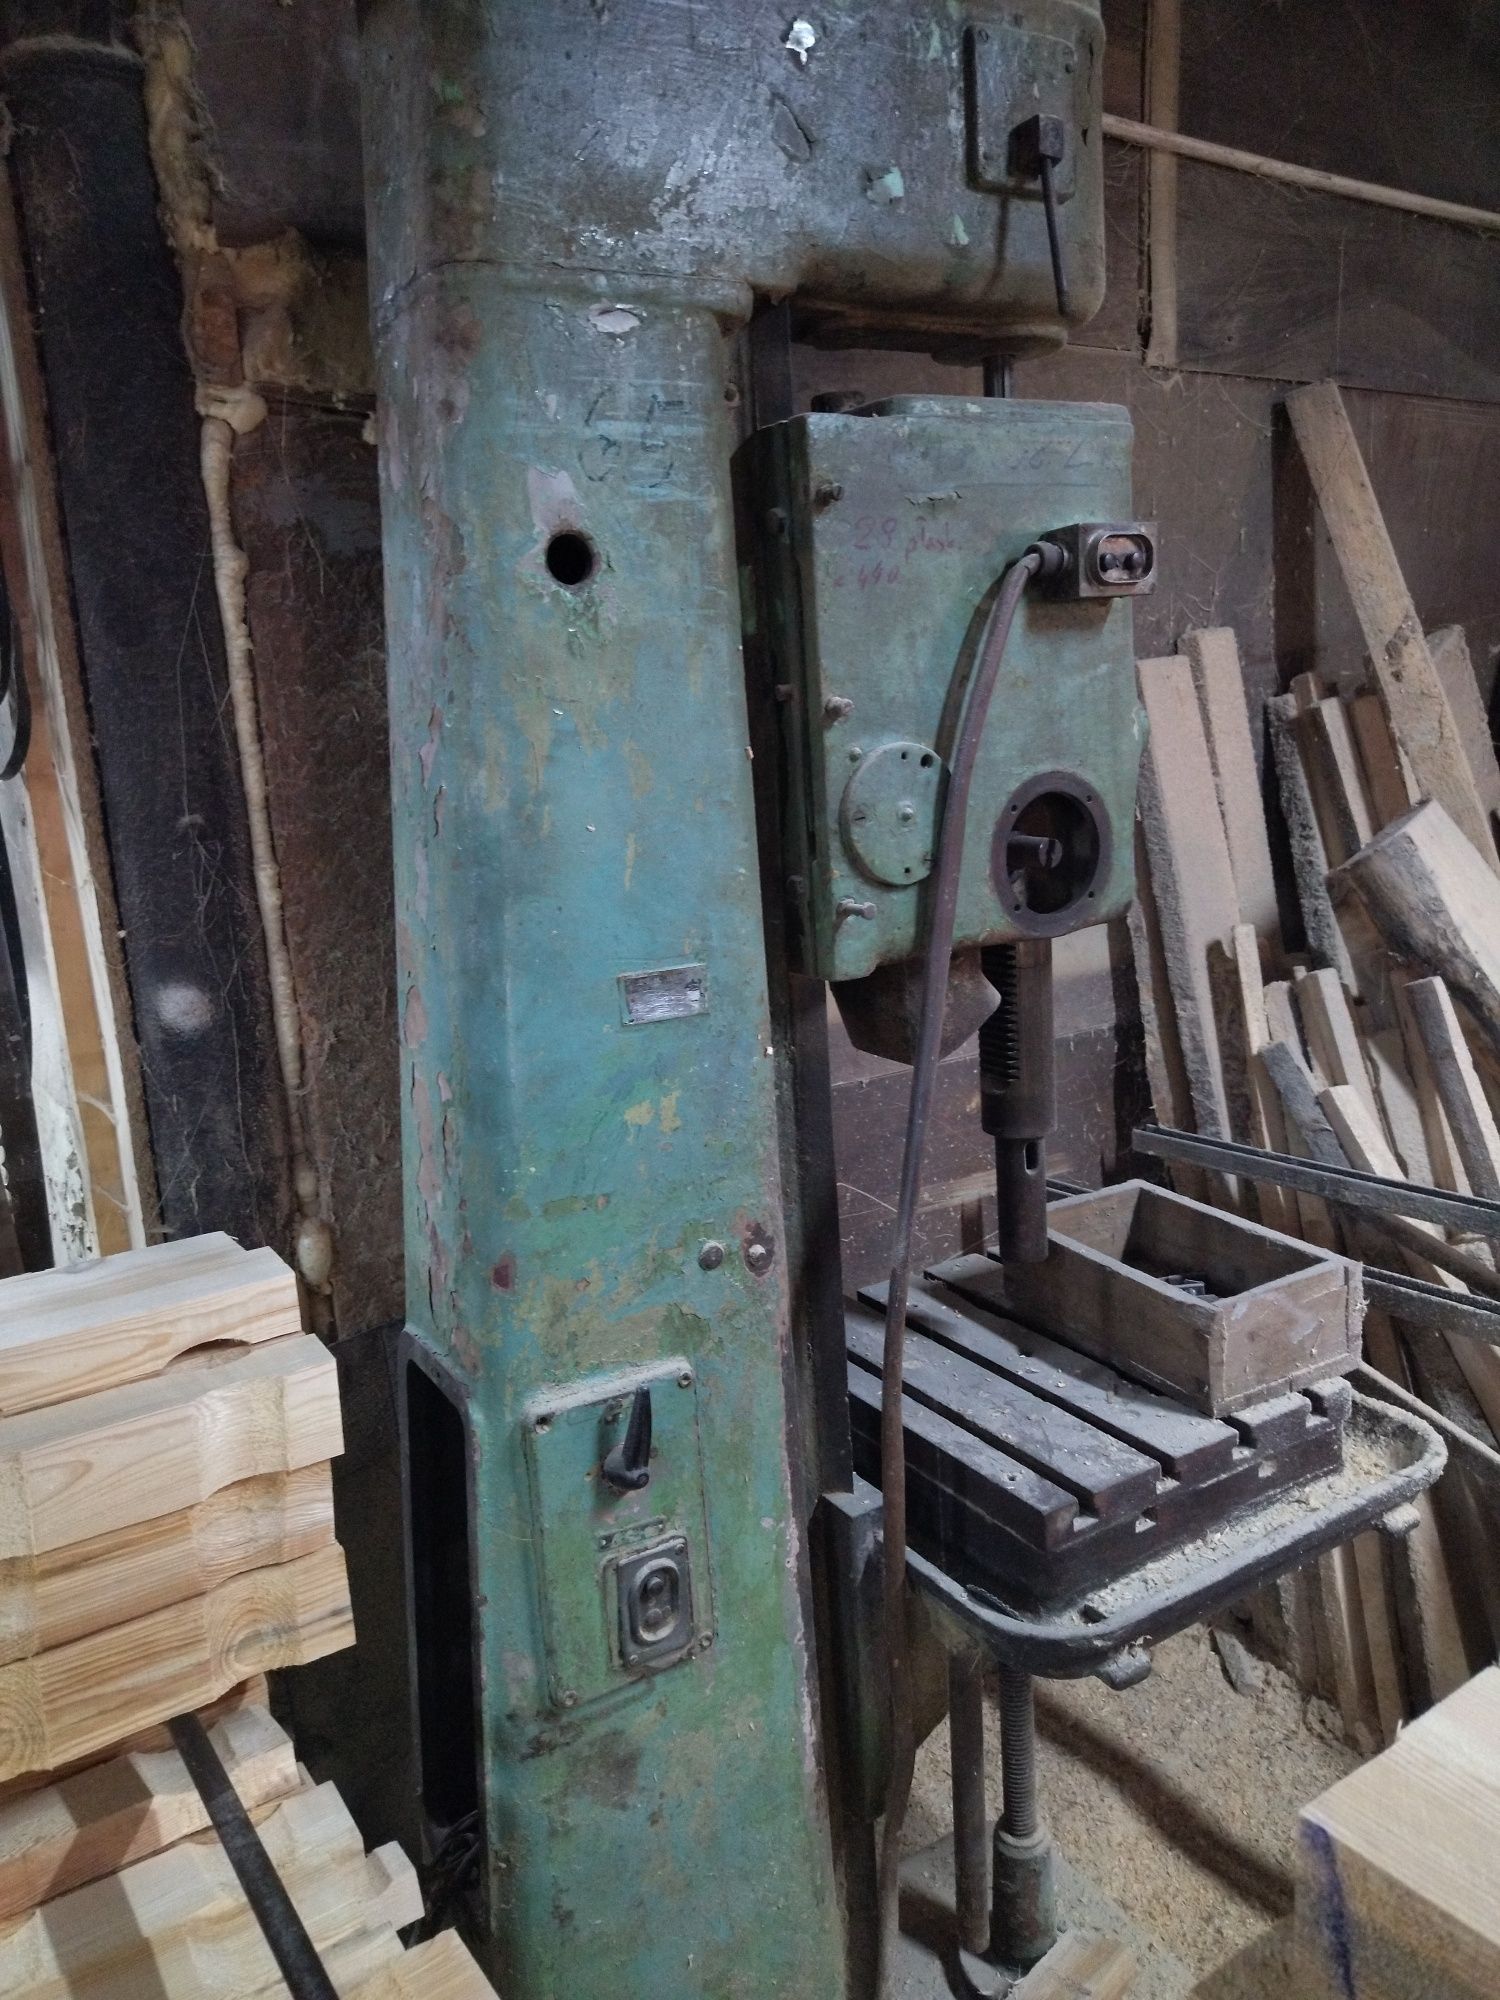 Wiertarka WK25 duża porządna maszyna stolarska , tokarskie